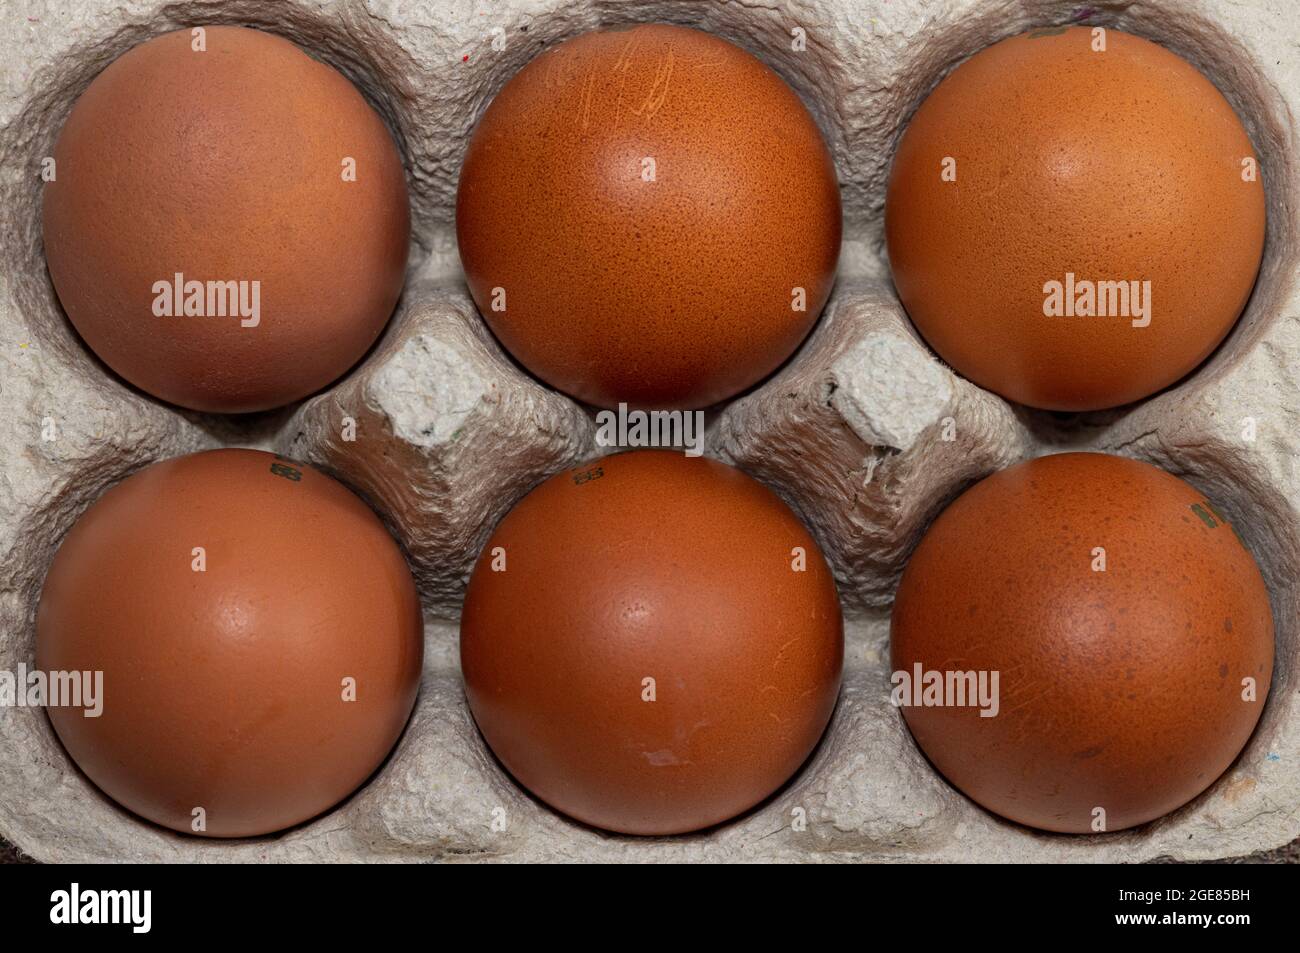 6 Maran-Eier der Klasse A mit Freilandhaltung Stockfoto